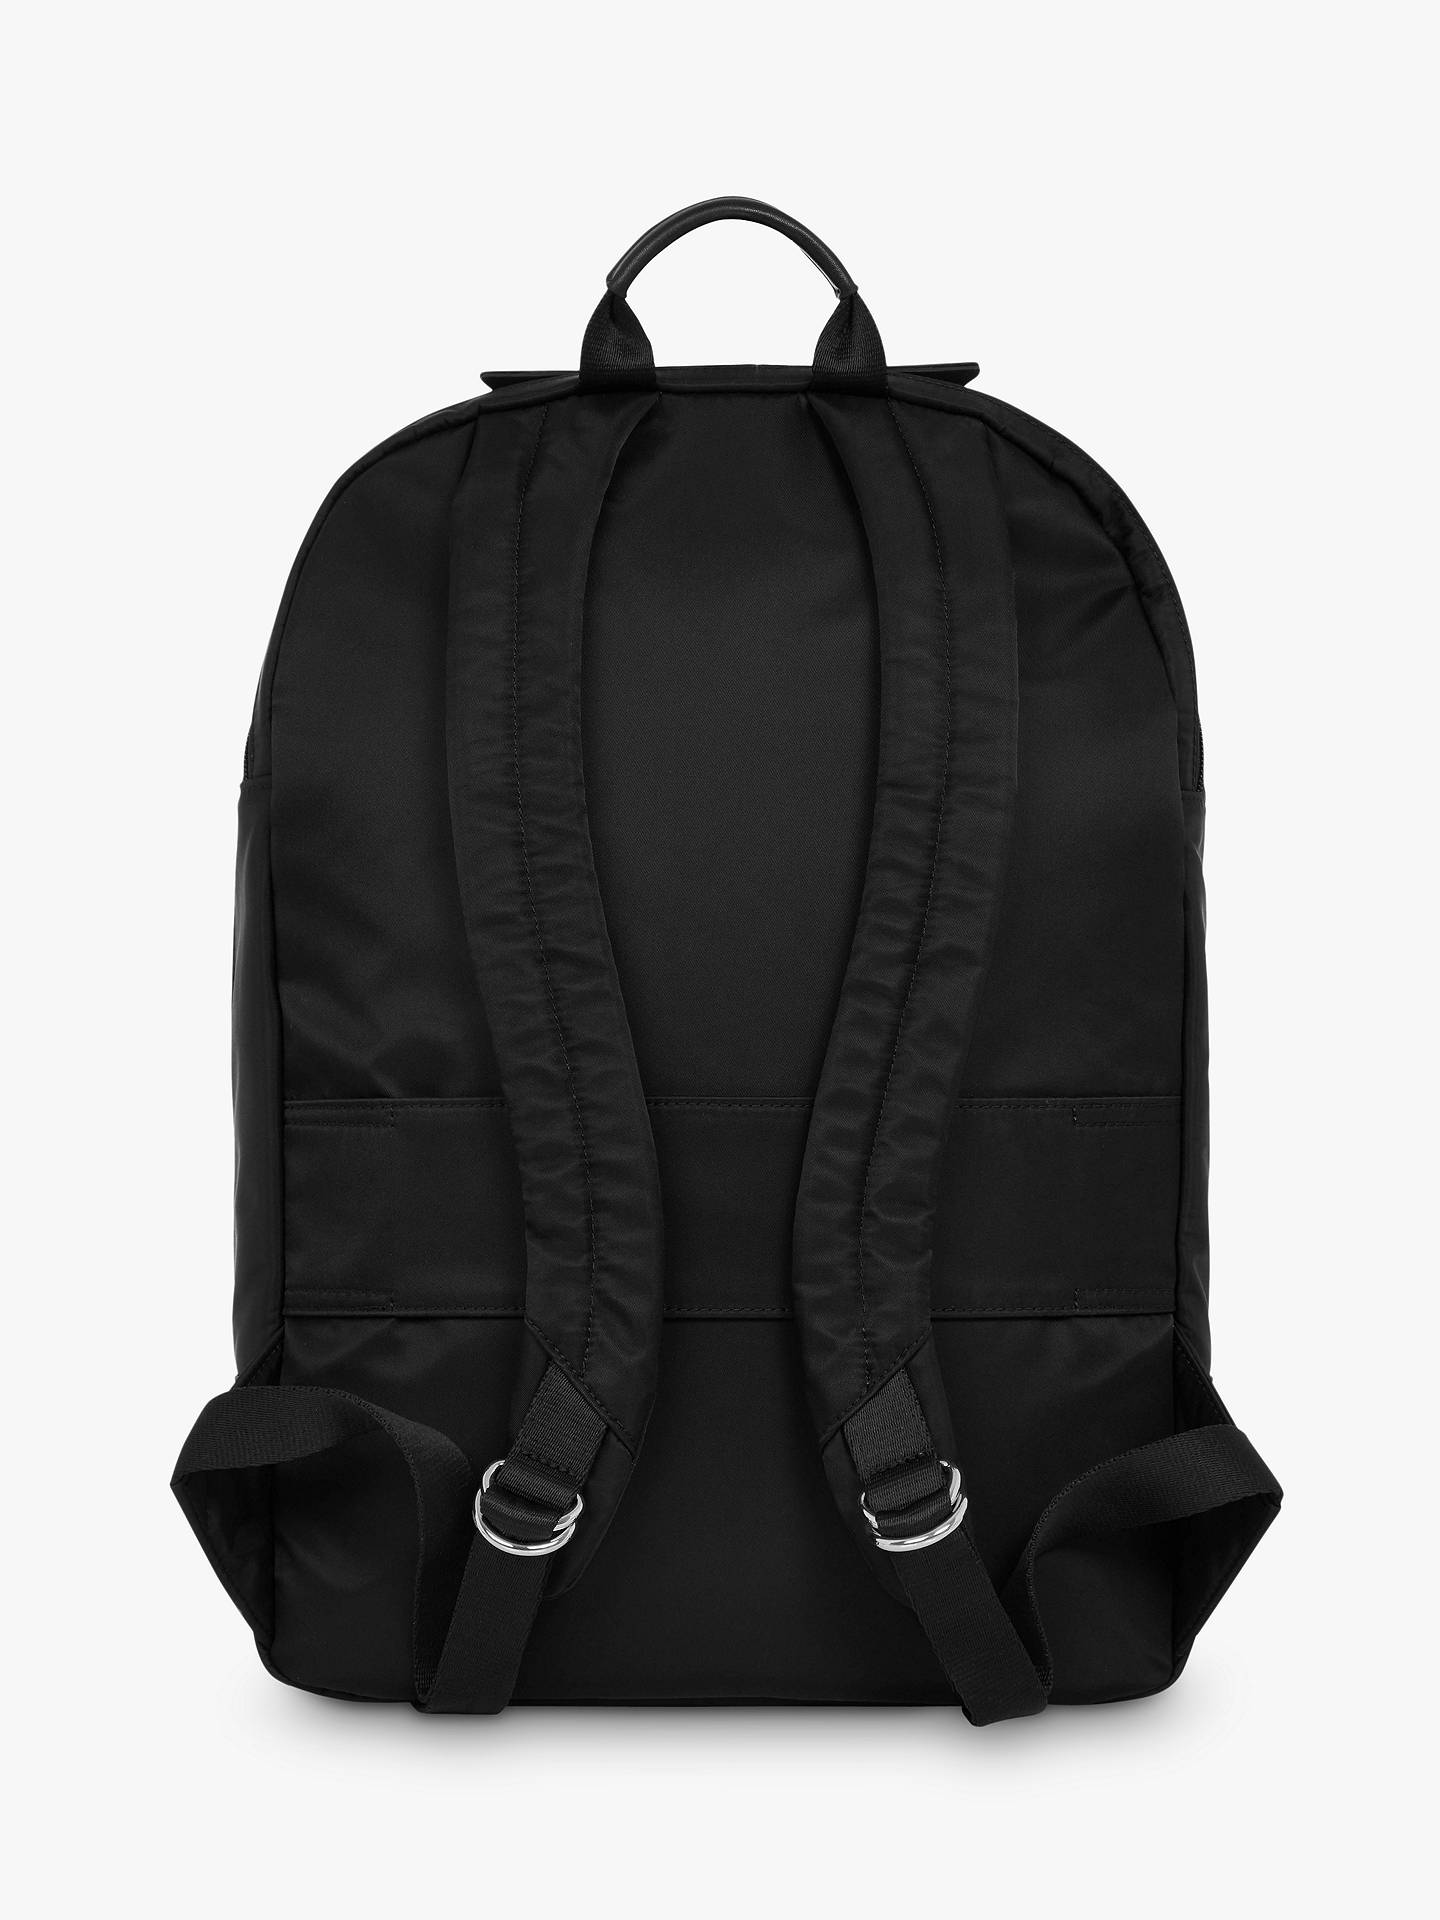 KNOMO Mayfair Beauchamp 2.0 Backpack for 14